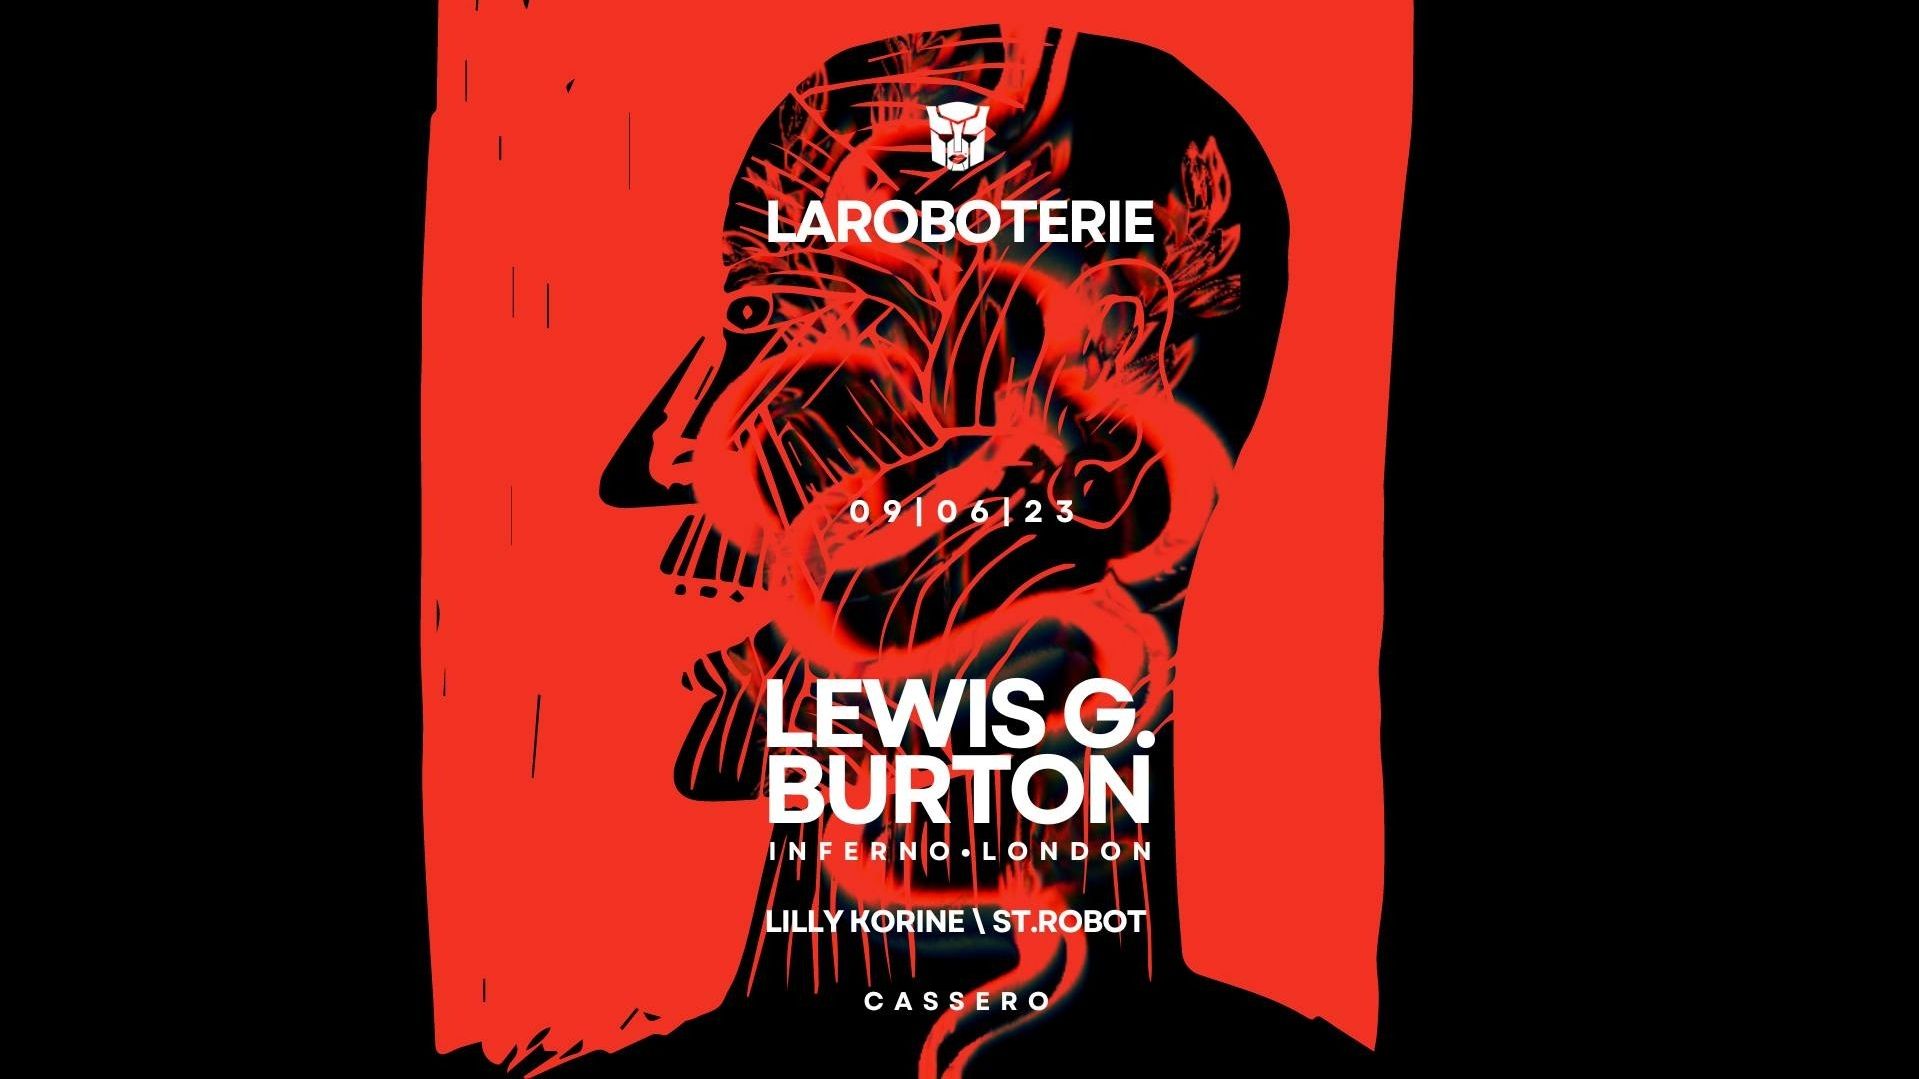 LaRoboterie \ Lewis G.burton